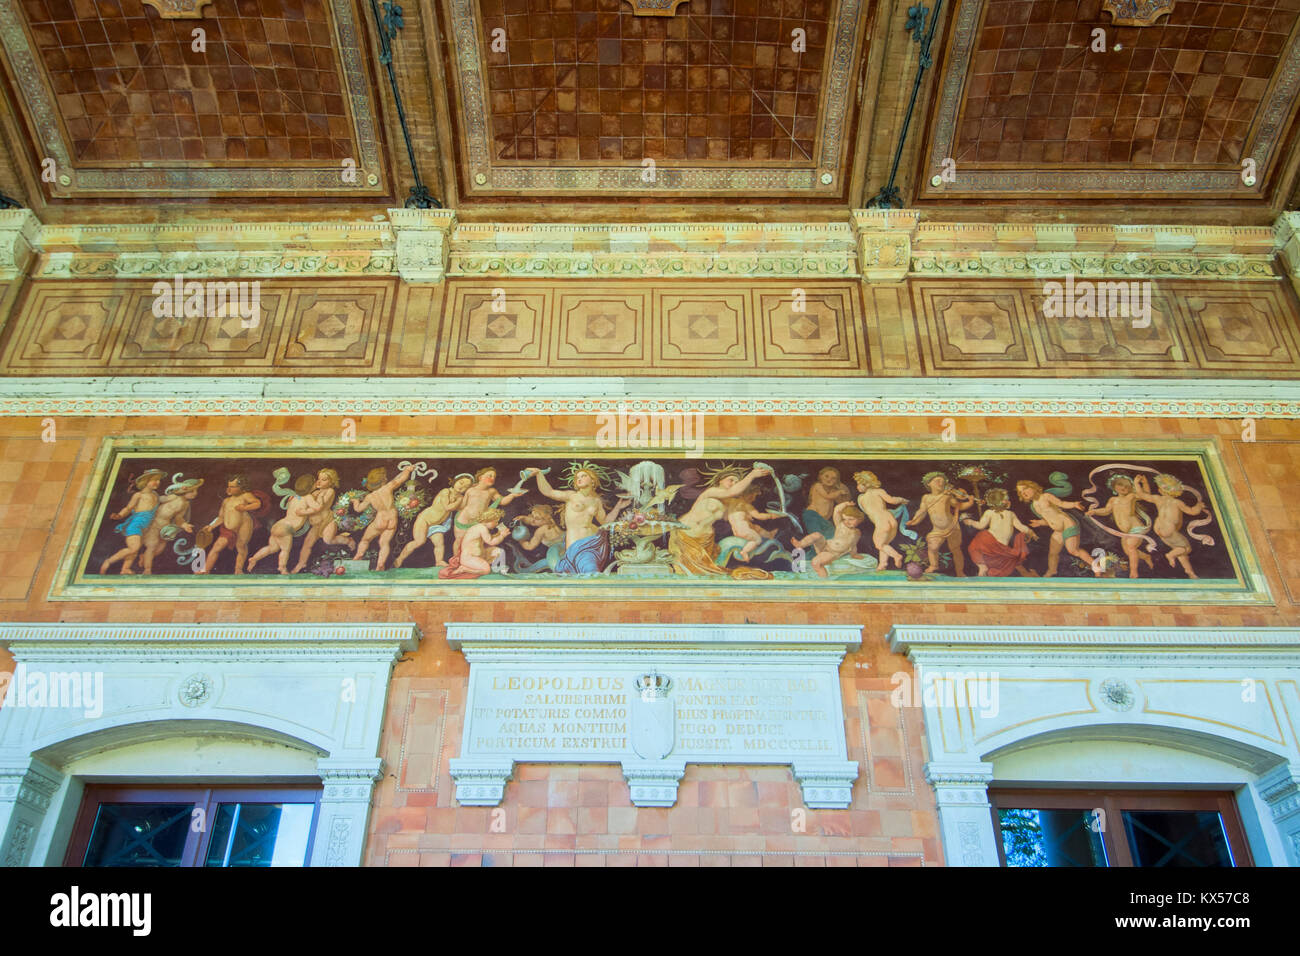 BRD, Baden-Württemberg, Baden-Baden, Trinkhalle, 1839-42 von Heinrich Hübsch erbaut, Wandelhalle mit Wandbildern, sie stellen Szenen aus Mythen und Sa Stock Photo